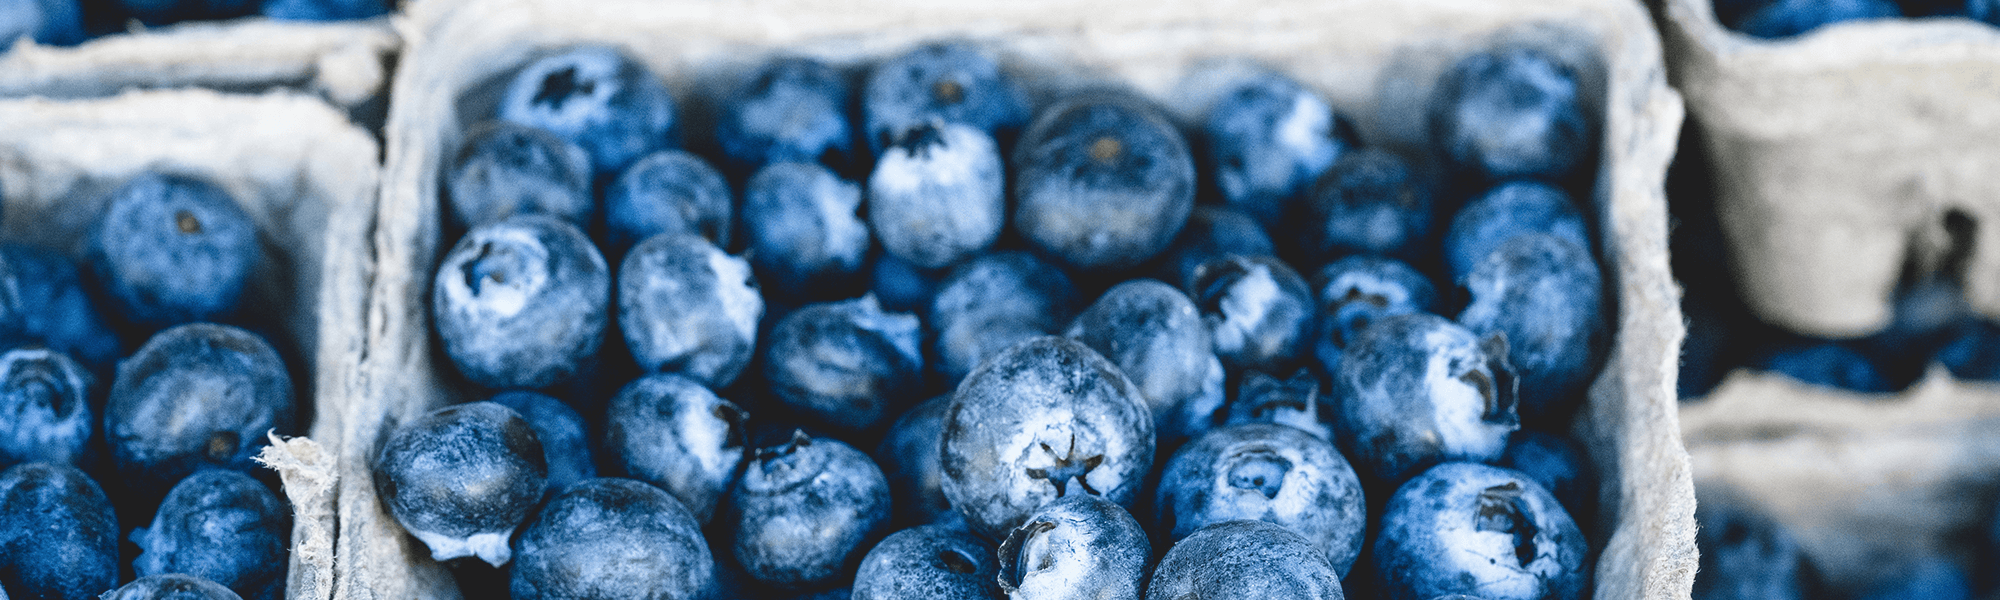 Blueberries in punnet